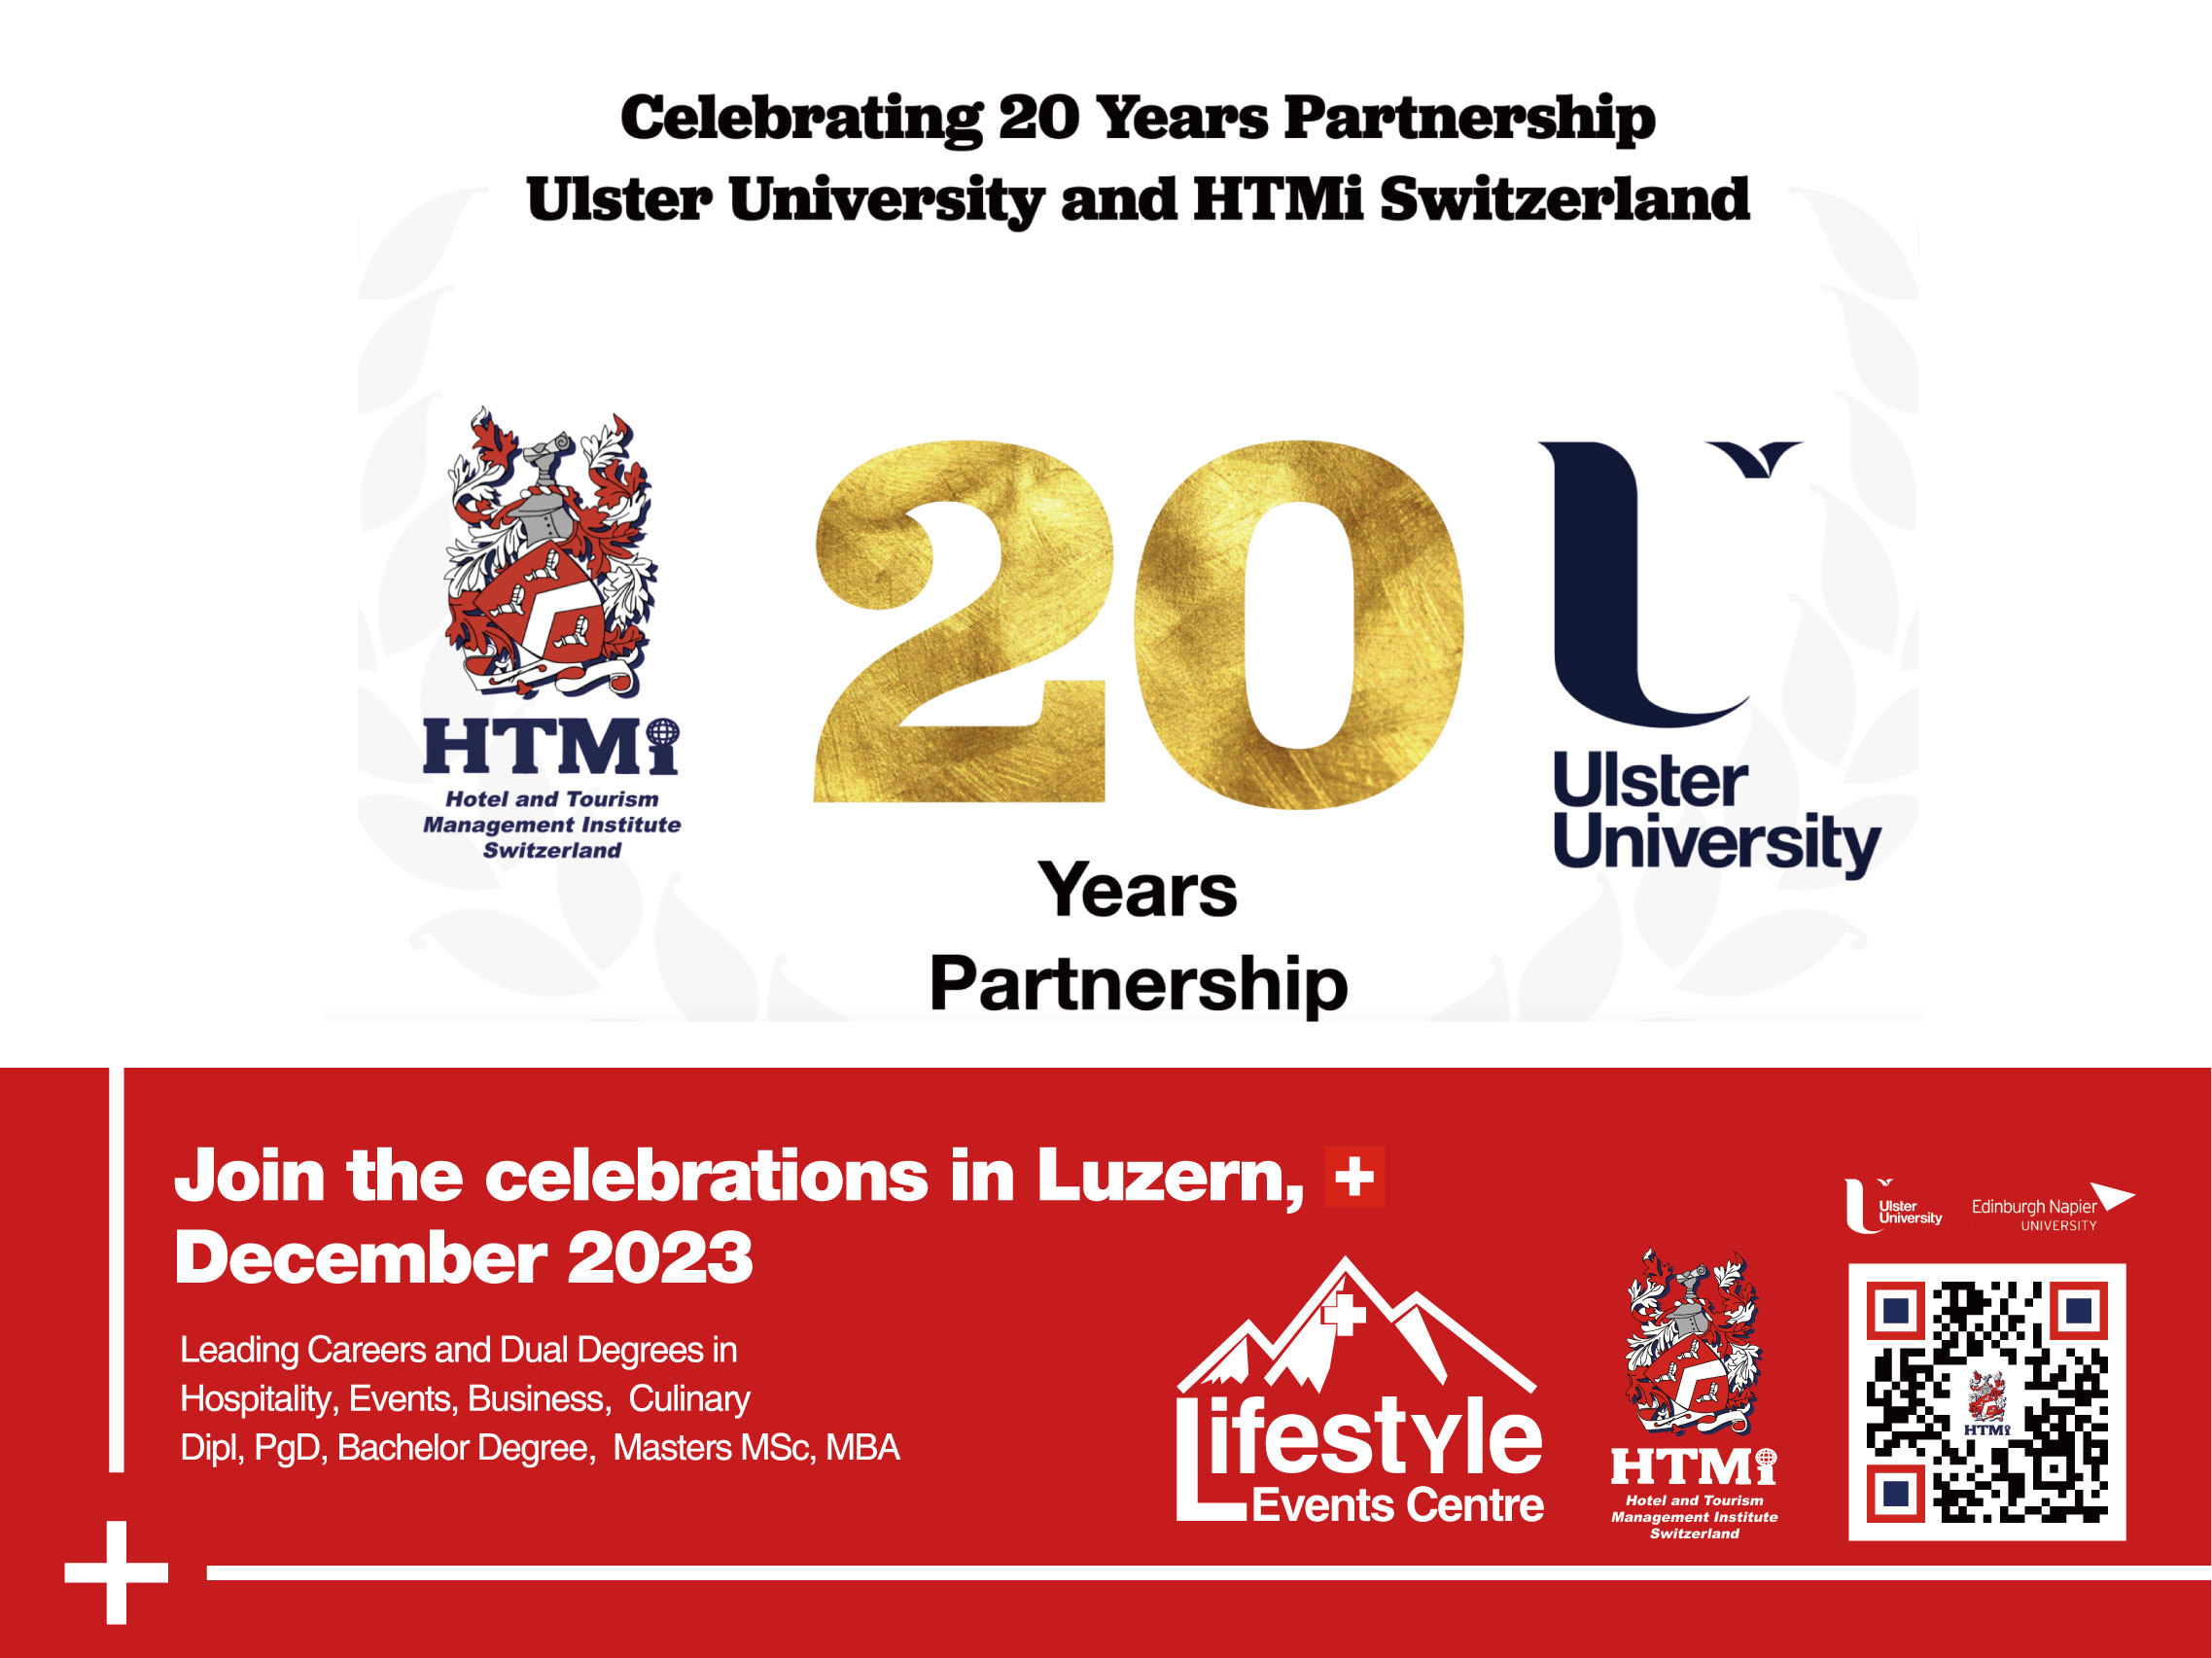 20 Years Partnership Ulster University and HTMi Switzerland